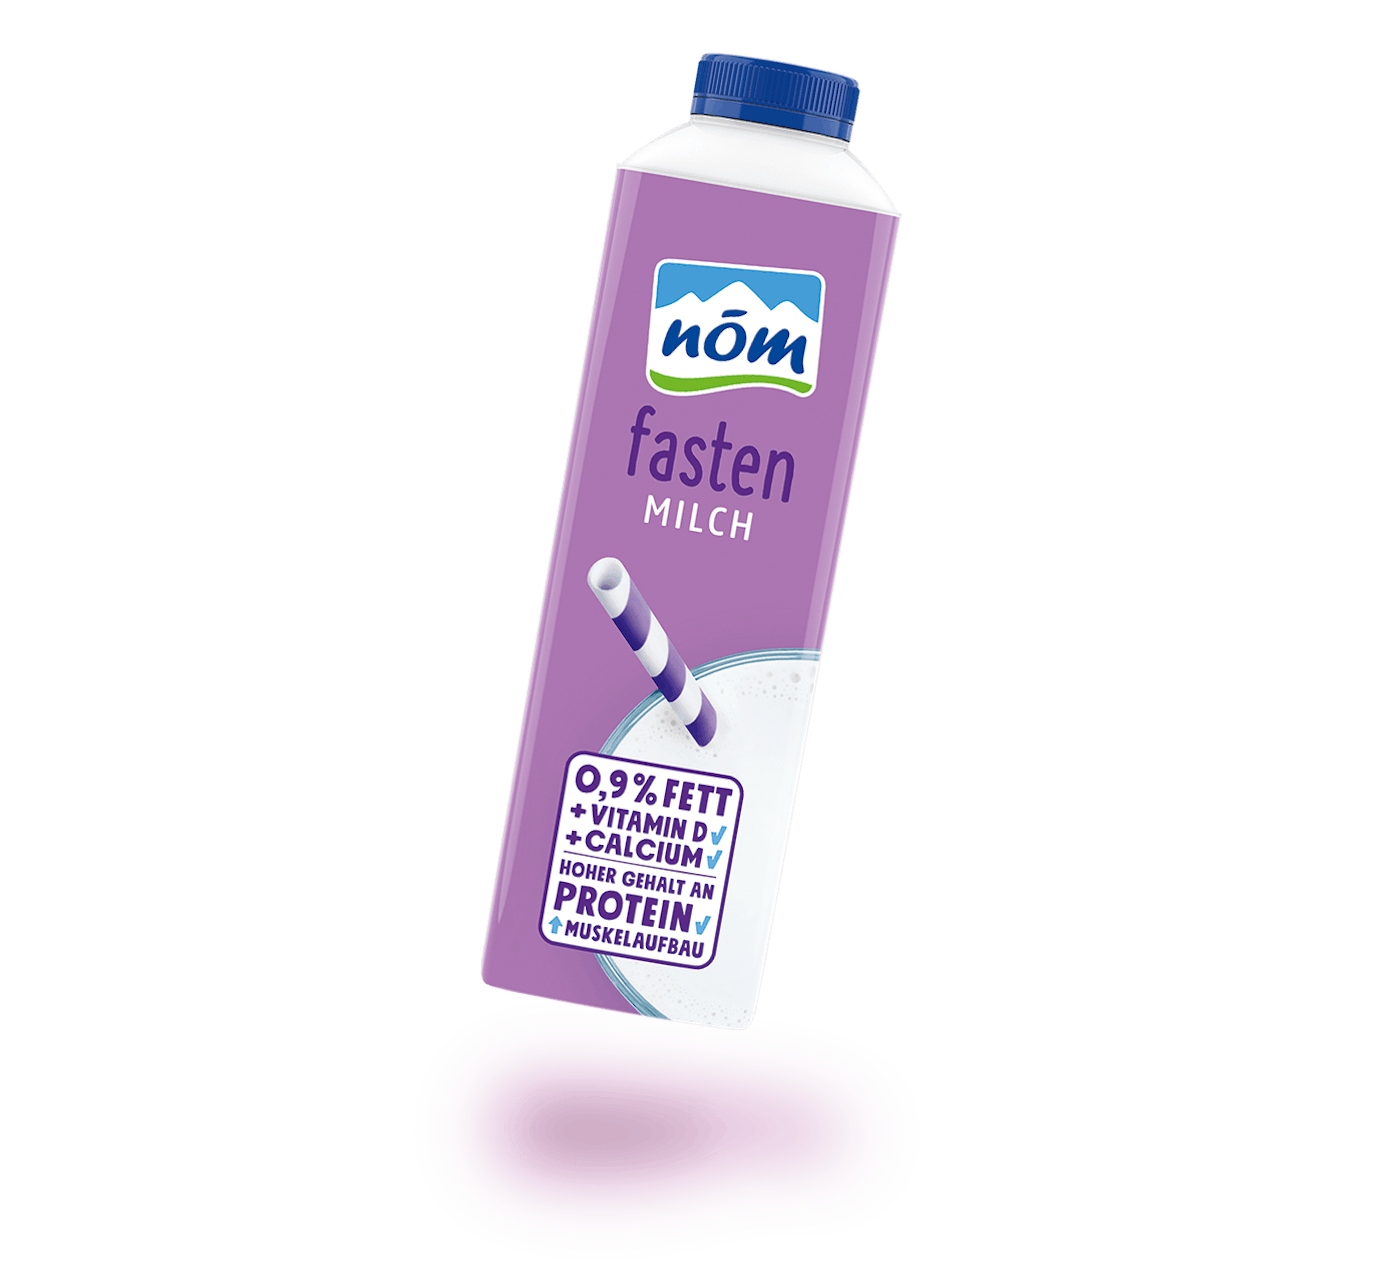 NÖM fasten Milch länger frisch in 1 Liter Tetra Pak